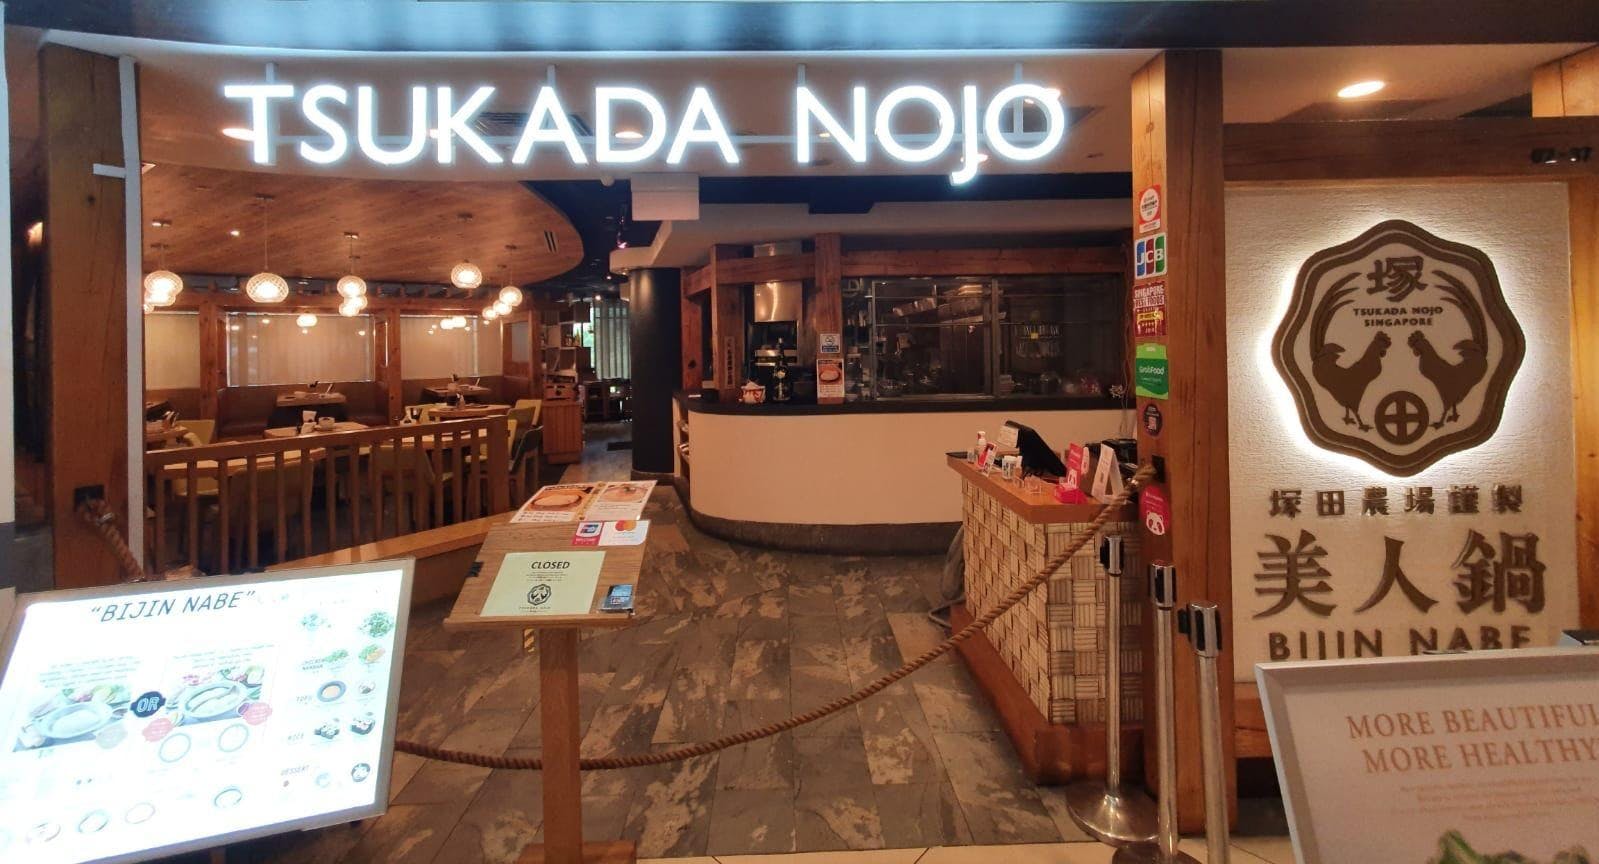 Photo of restaurant Tsukada Nojo - Chinatown Point in Chinatown, Singapore